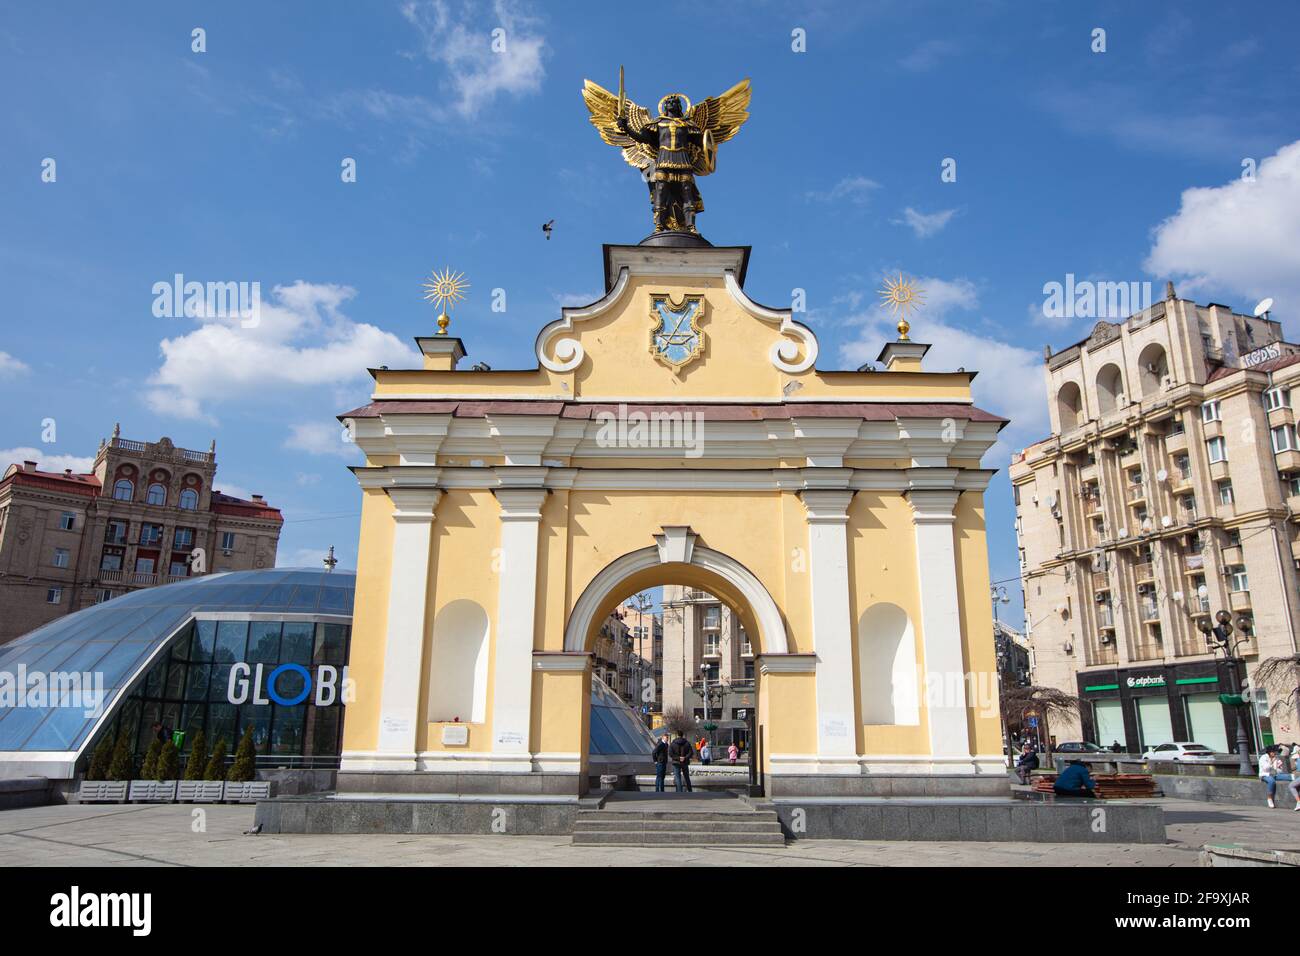 Kiew, Ukraine - 1. April 2021: Statue des heiligen Erzengels Michael, Schutzpatron von Kiew auf dem Unabhängigkeitsplatz. Stockfoto